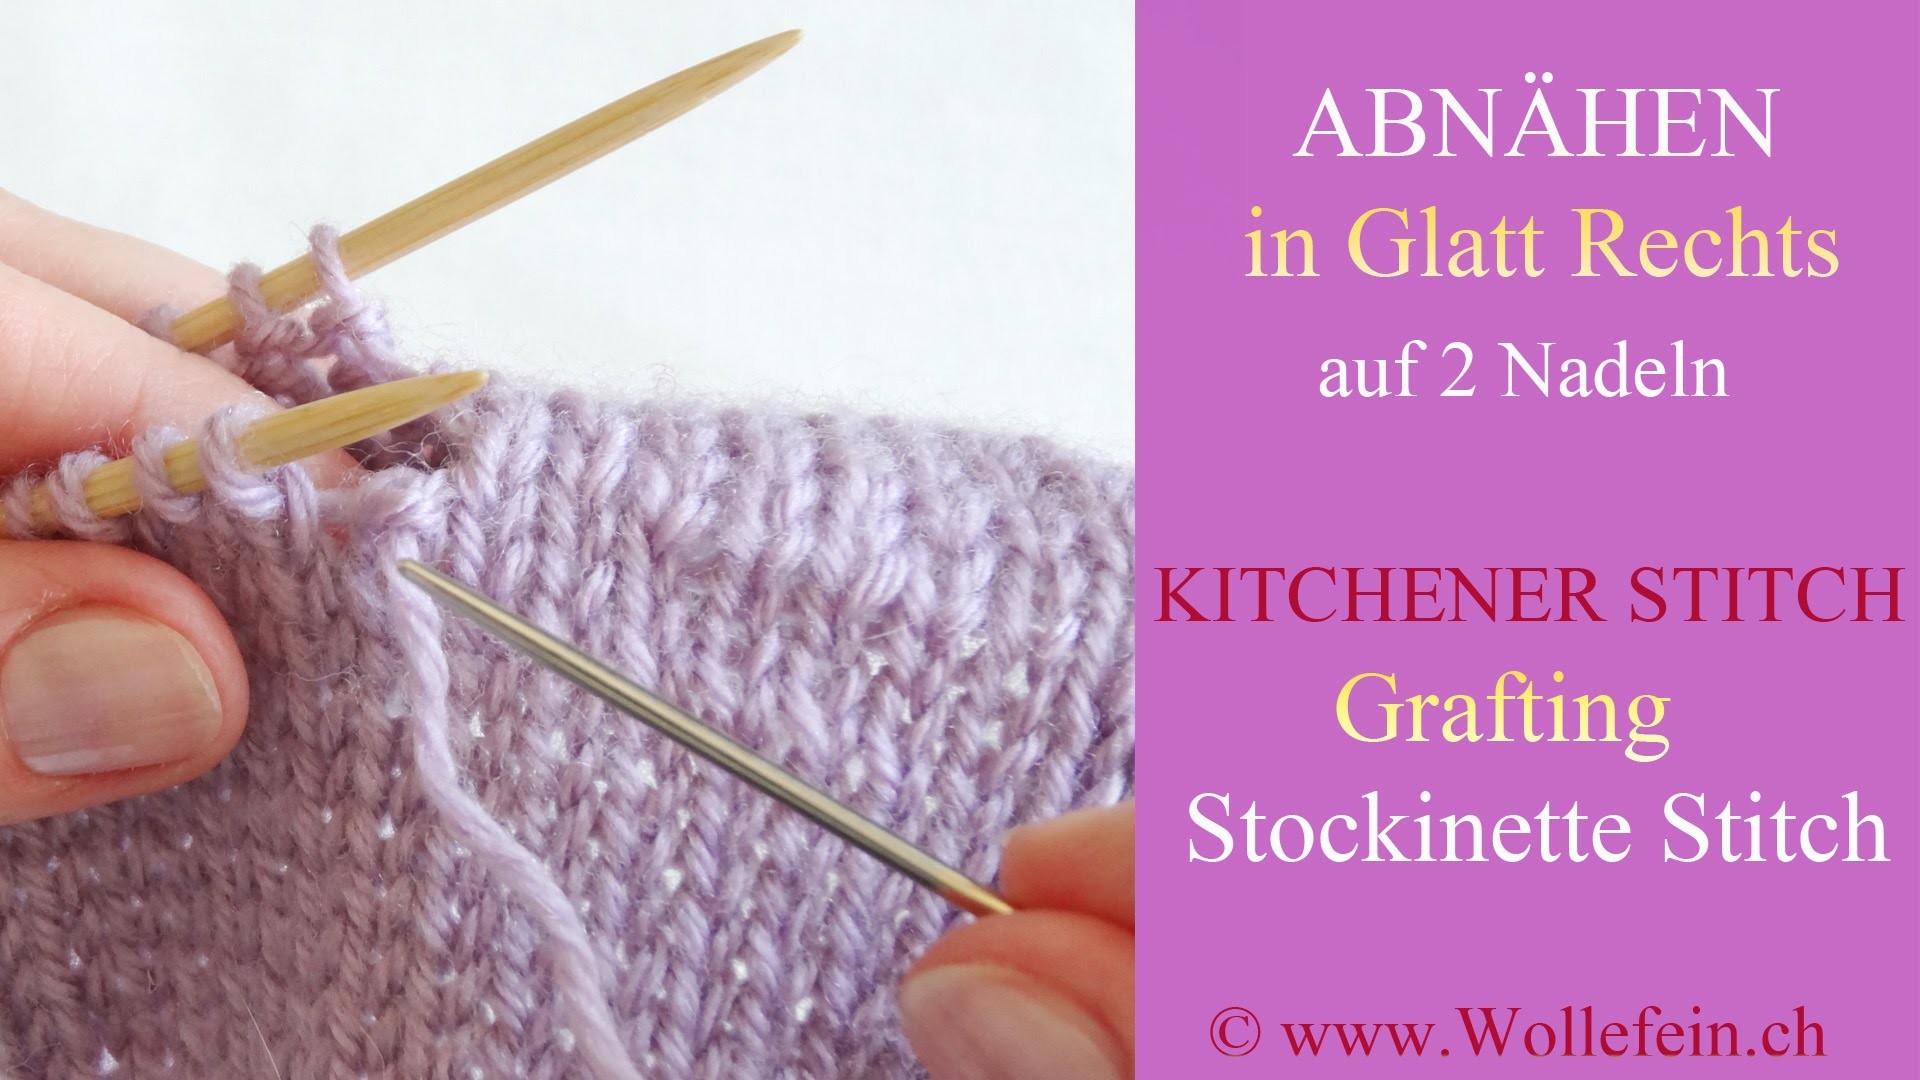 Abnähen unsichtbar auf Glatt Rechts auf zwei Nadeln - Kitchener Stitch Grafting Stockinette Stitch